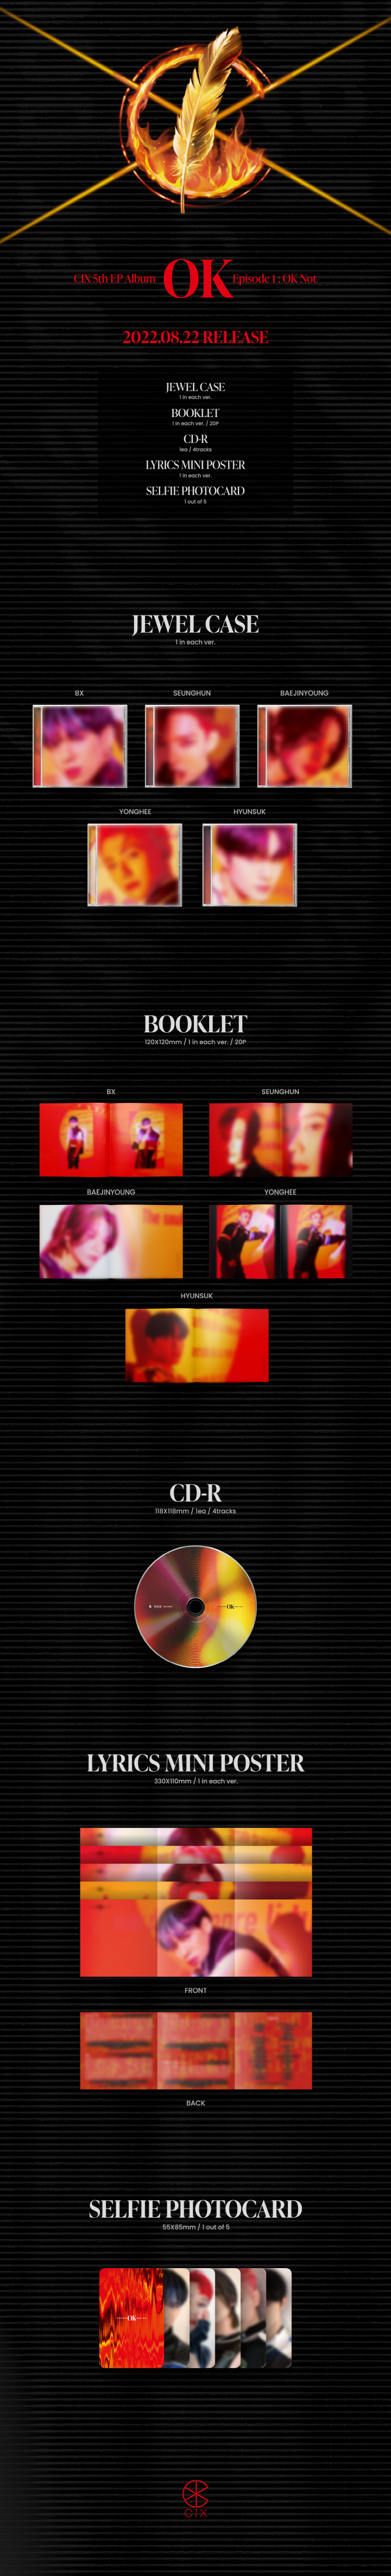 CIX - 5th EP ALBUM [OK Episode 1 OK Not] Seunghun ver